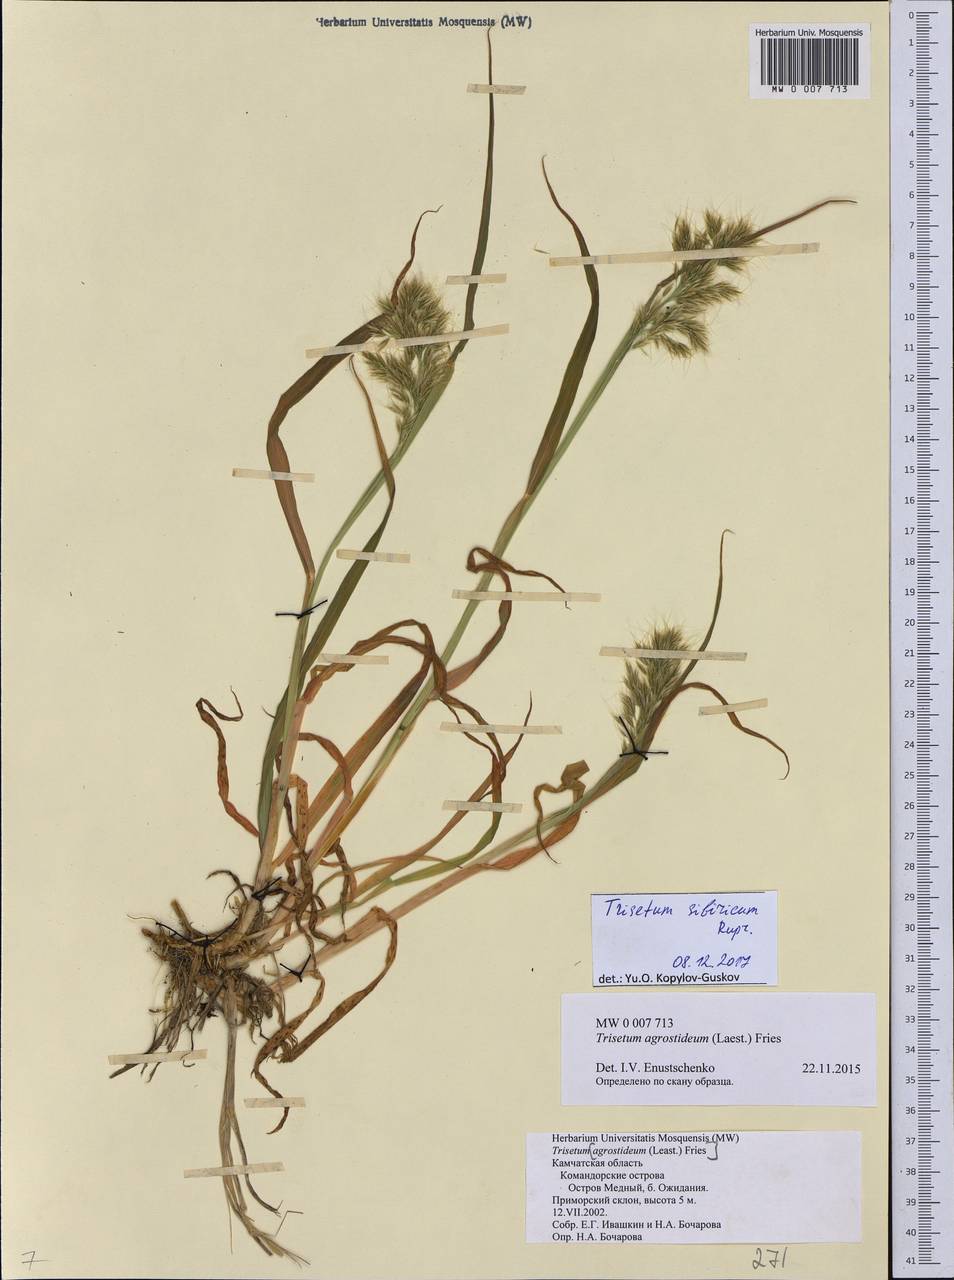 Sibirotrisetum sibiricum (Rupr.) Barberá, Siberia, Chukotka & Kamchatka (S7) (Russia)